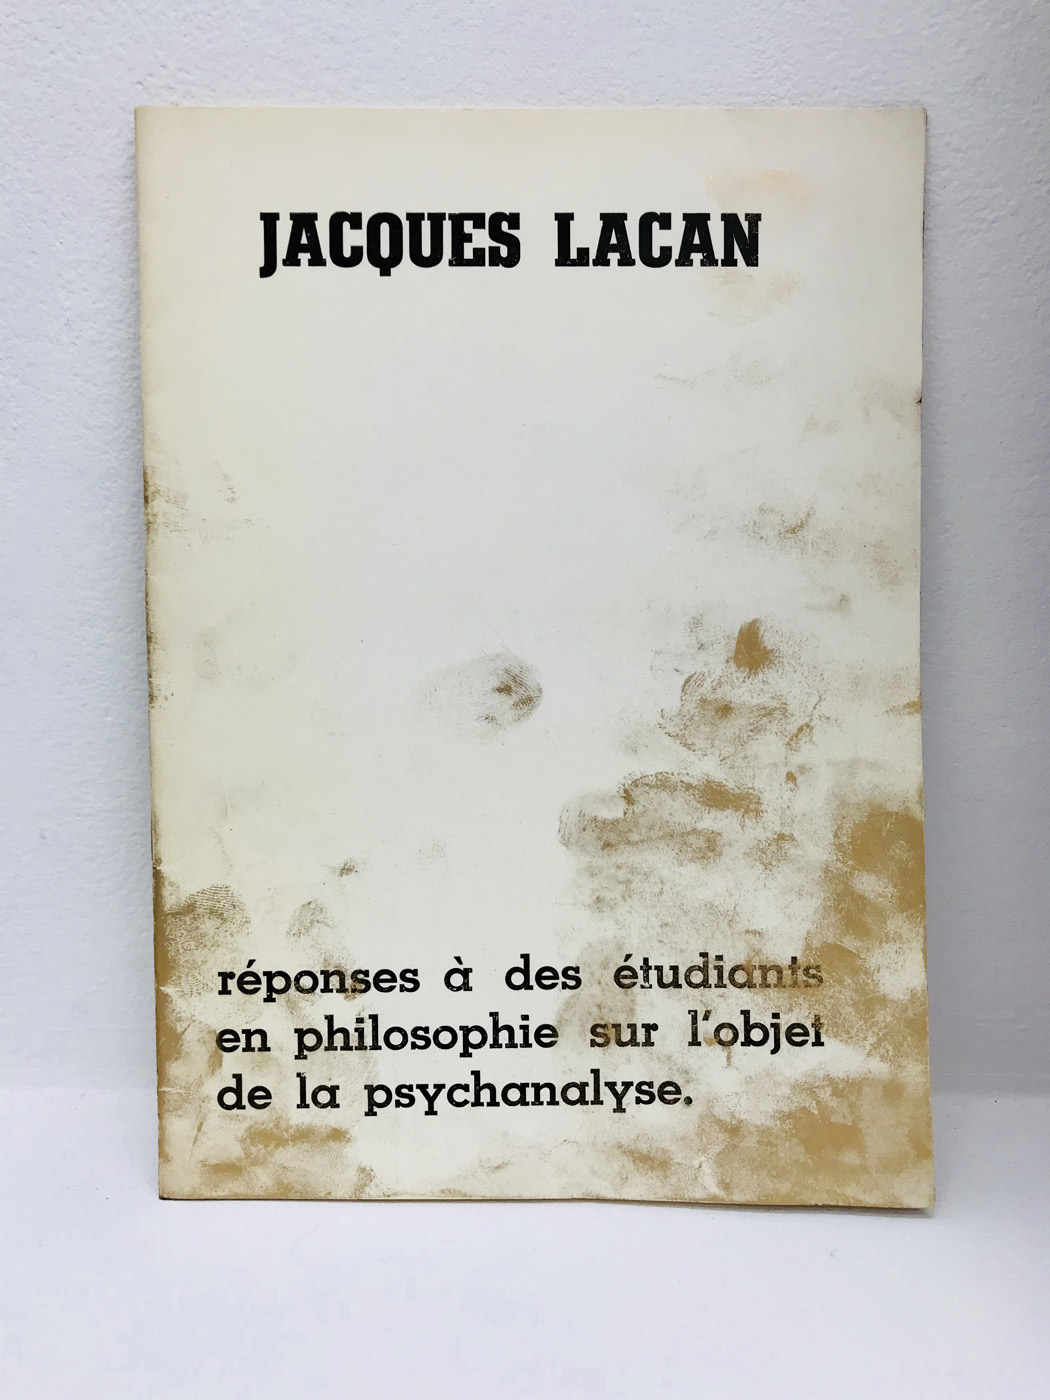 I read it with golden fingers (rponses  des tudiants en philosophie sur l'objet de la psychanalyse), Dora Garca